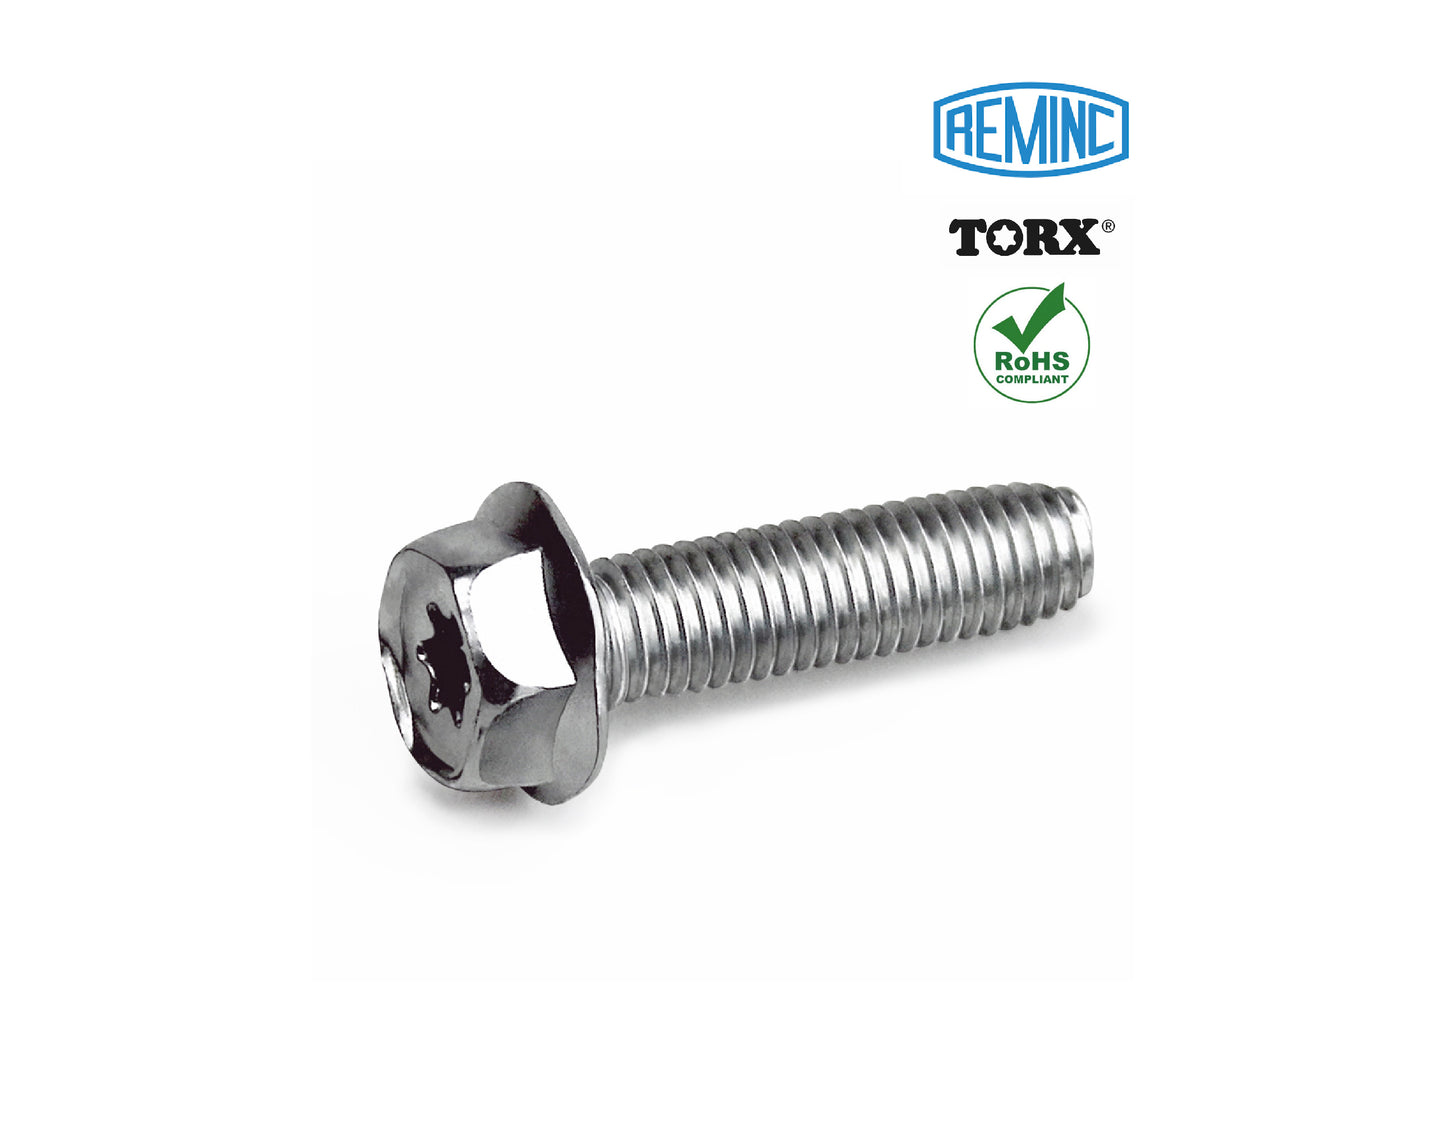 POWERLOK® Licensed screw, Hexagonal flange head TORX® recess